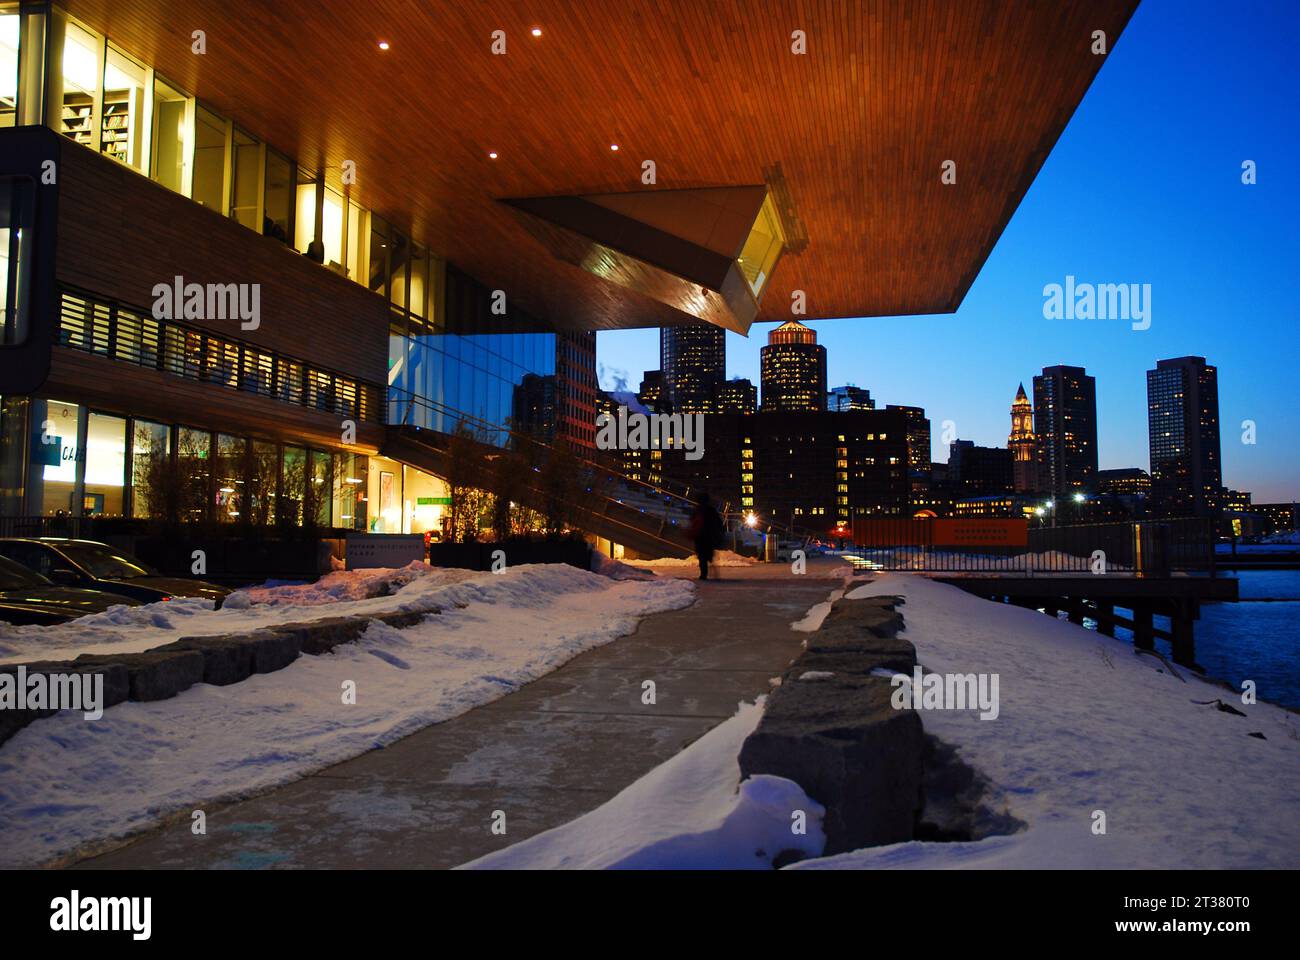 La ville de Boston se dresse derrière la façade du musée d'art contemporain la nuit Banque D'Images